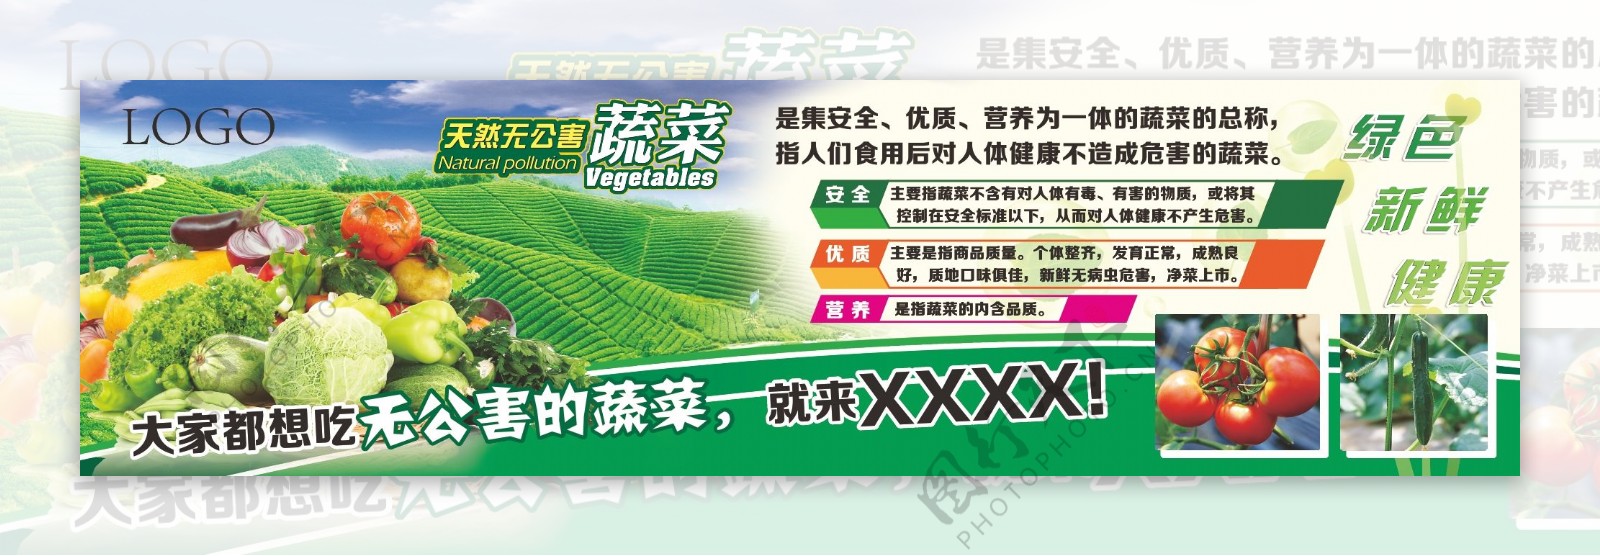 无公害蔬菜展板4x1米5